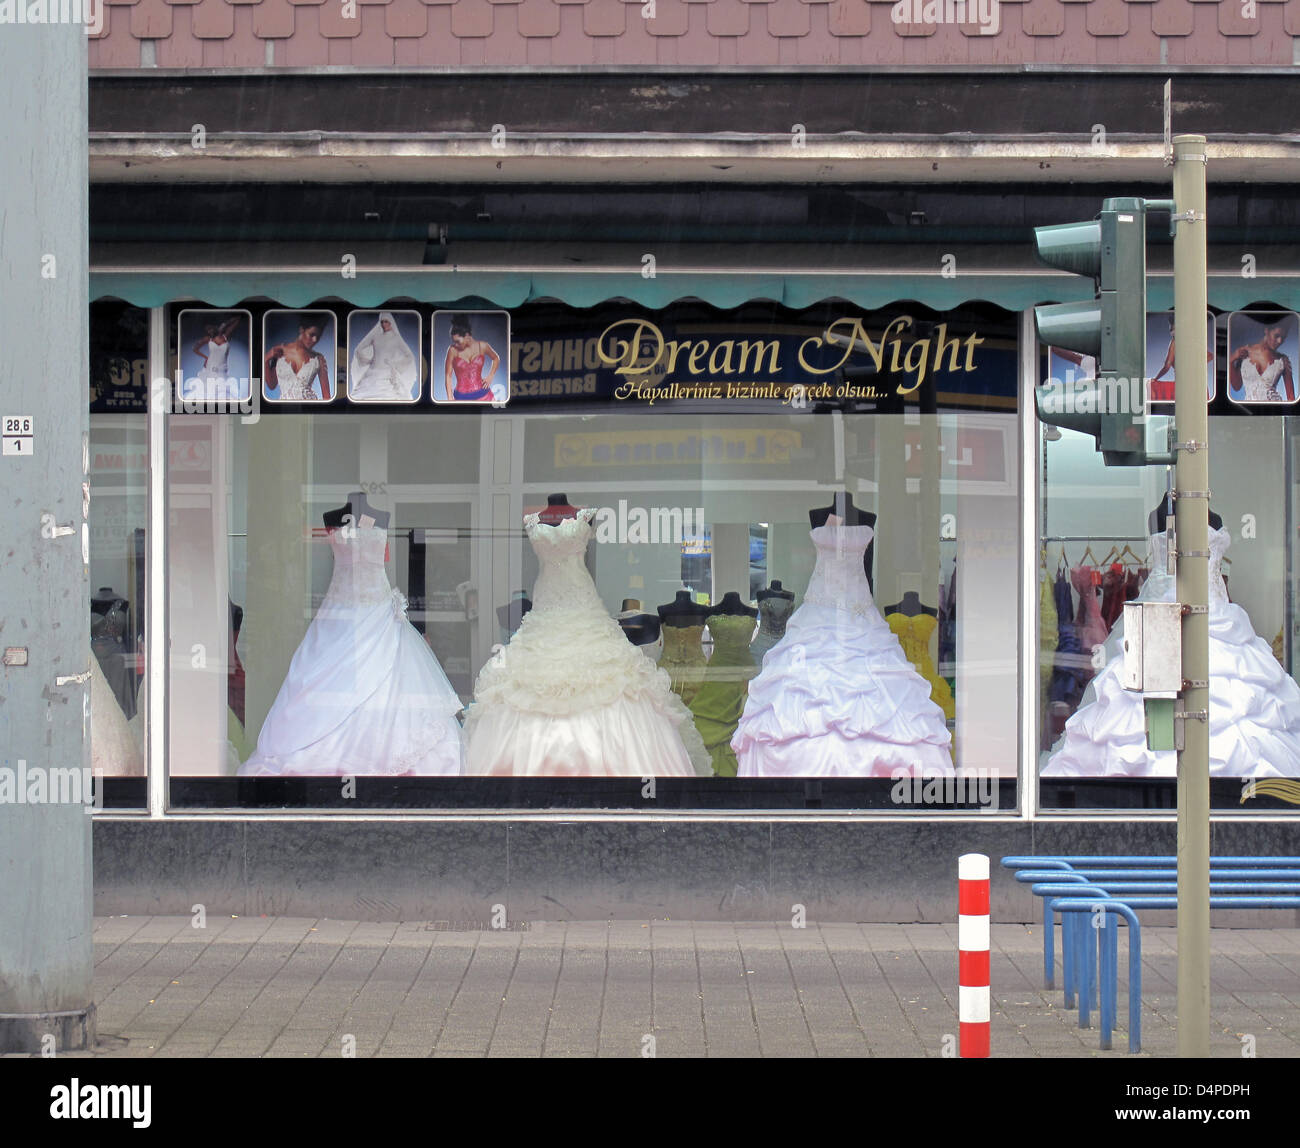 Einige 40 Turkische Hochzeit Shops Rund Um Weseler Strasse Ist In Duisburg Marxloh Deutschland 6 Juni 09 Abgebildet Foto Markus C Hurek Stockfotografie Alamy